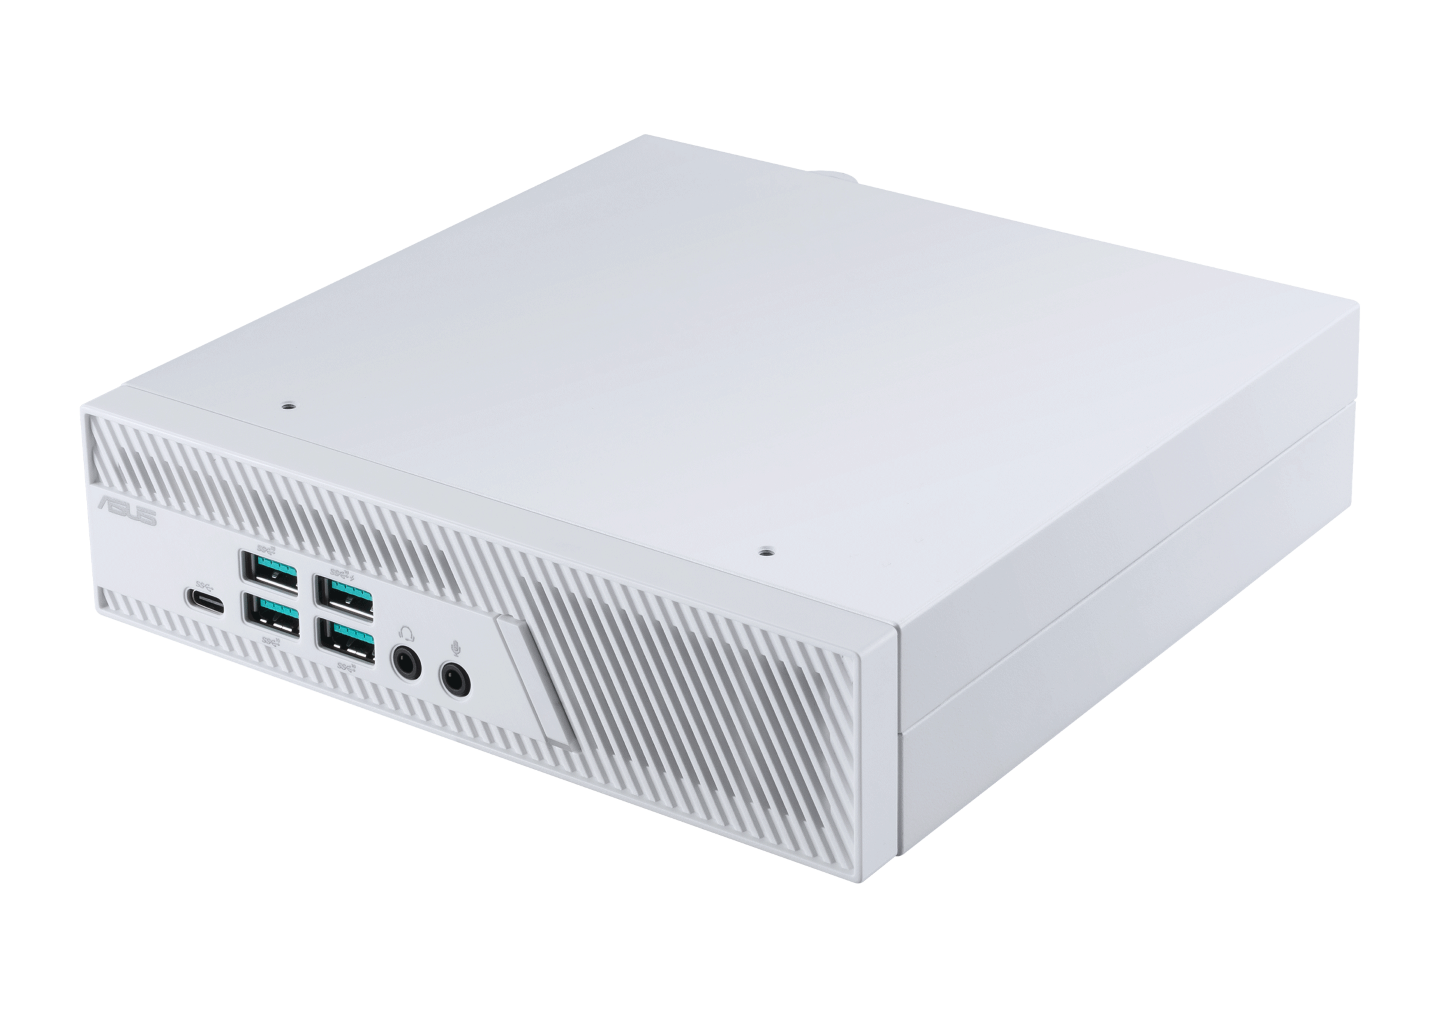 ASUS-Mini-PC-PB62_White-e1617031099151.png